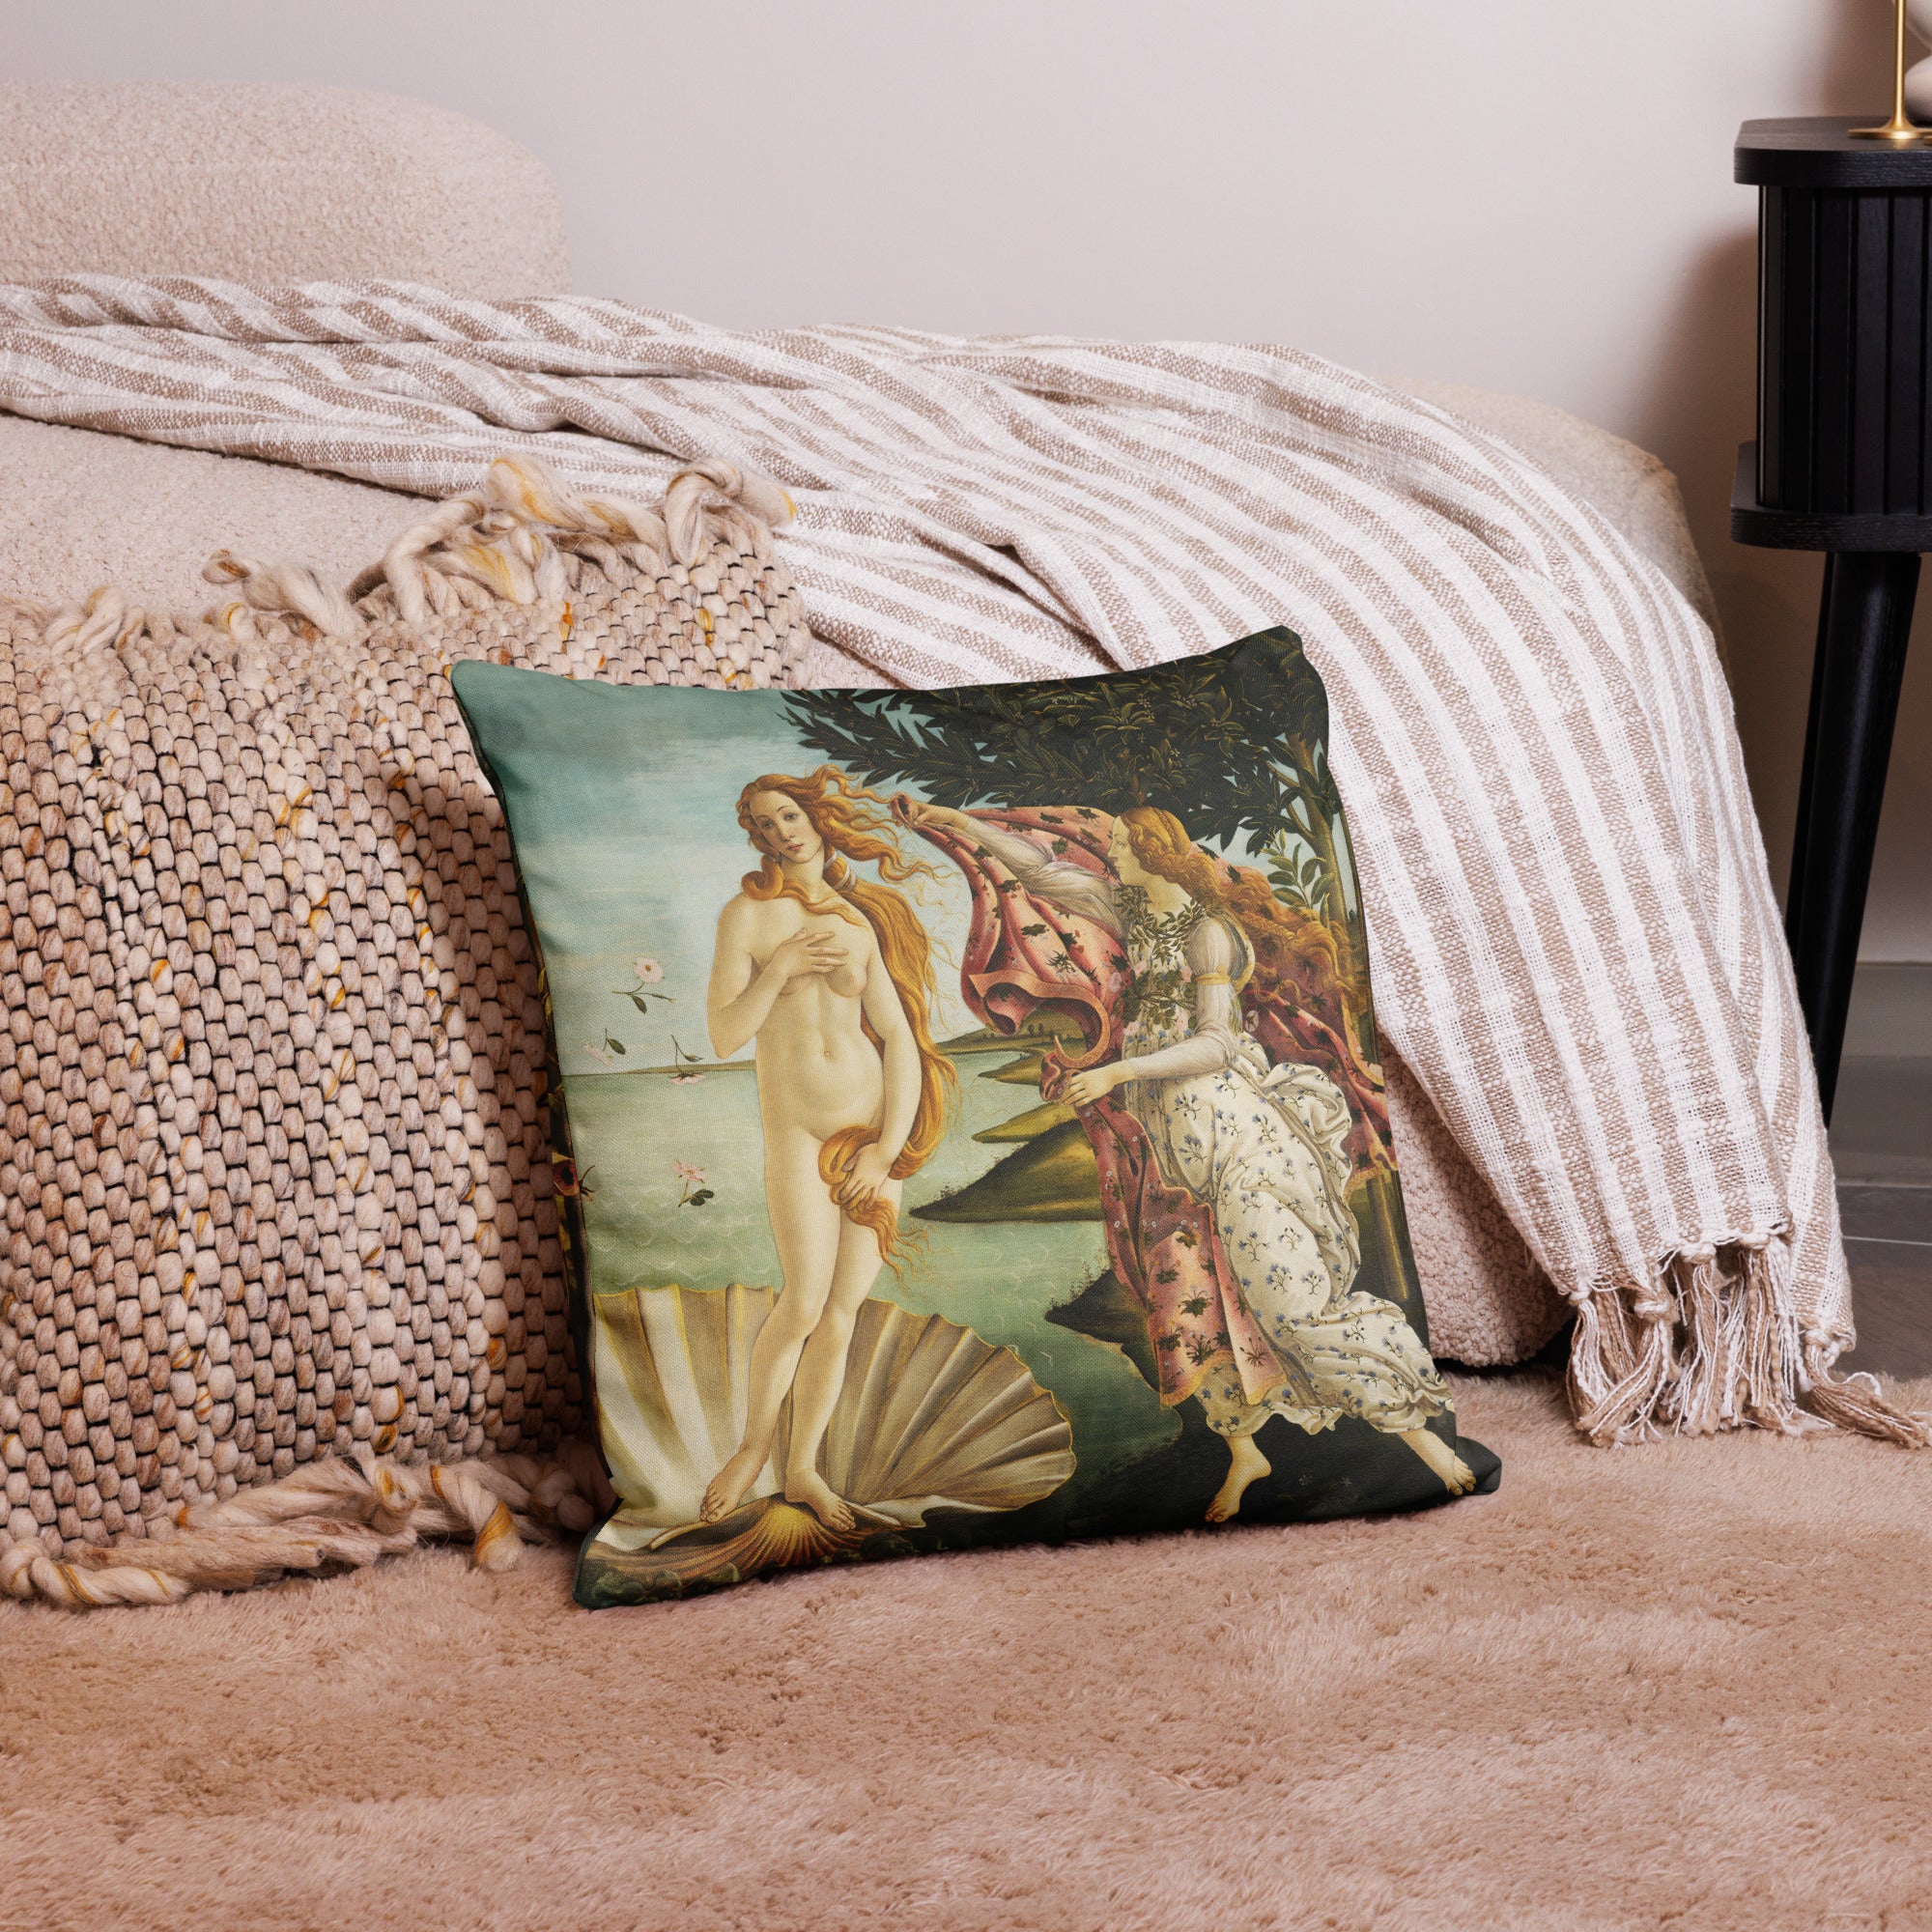 Sandro Botticelli 'The Birth of Venus' Famous Painting Premium Pillow | Premium Art Cushion